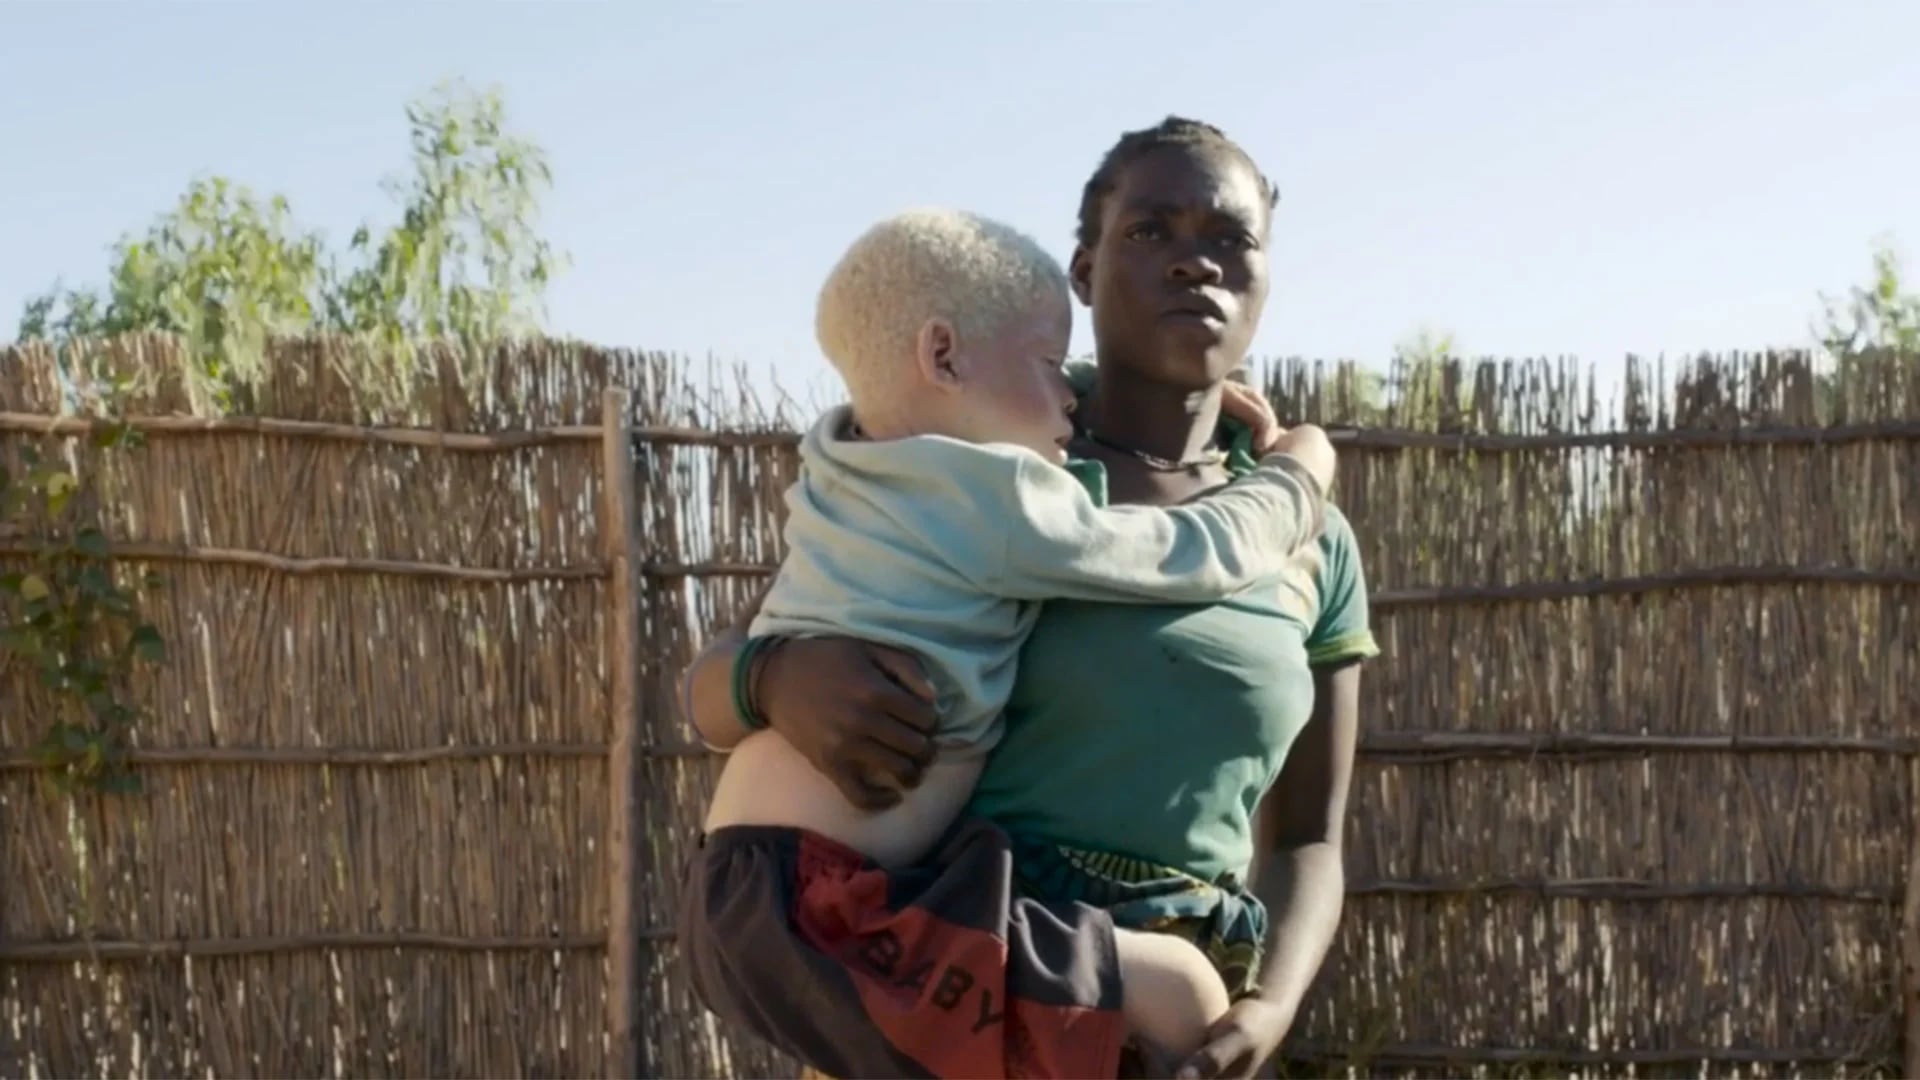 Las mujeres albinas corren un doble riesgo: ser asesinadas y violadas. Se extendió la creencia que mantener relaciones sexuales con ellas cura el HIV/sida (Amnesty International)